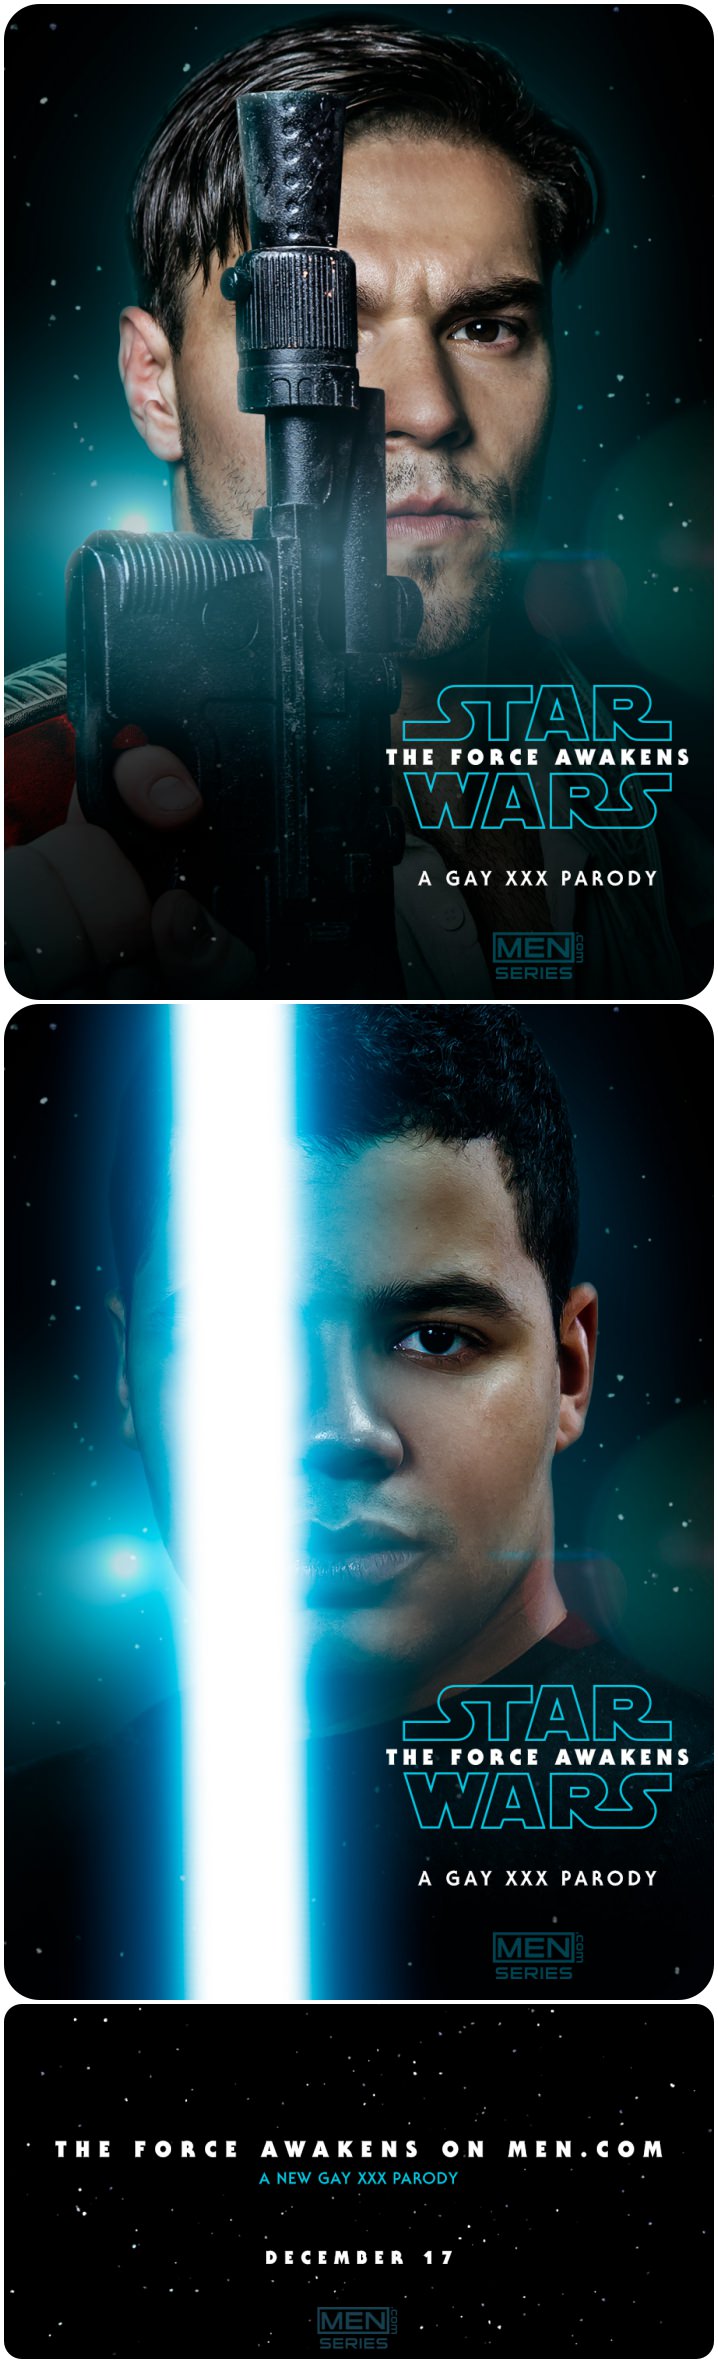 Star Wars: The Force Awakens A Gay XXX Parody